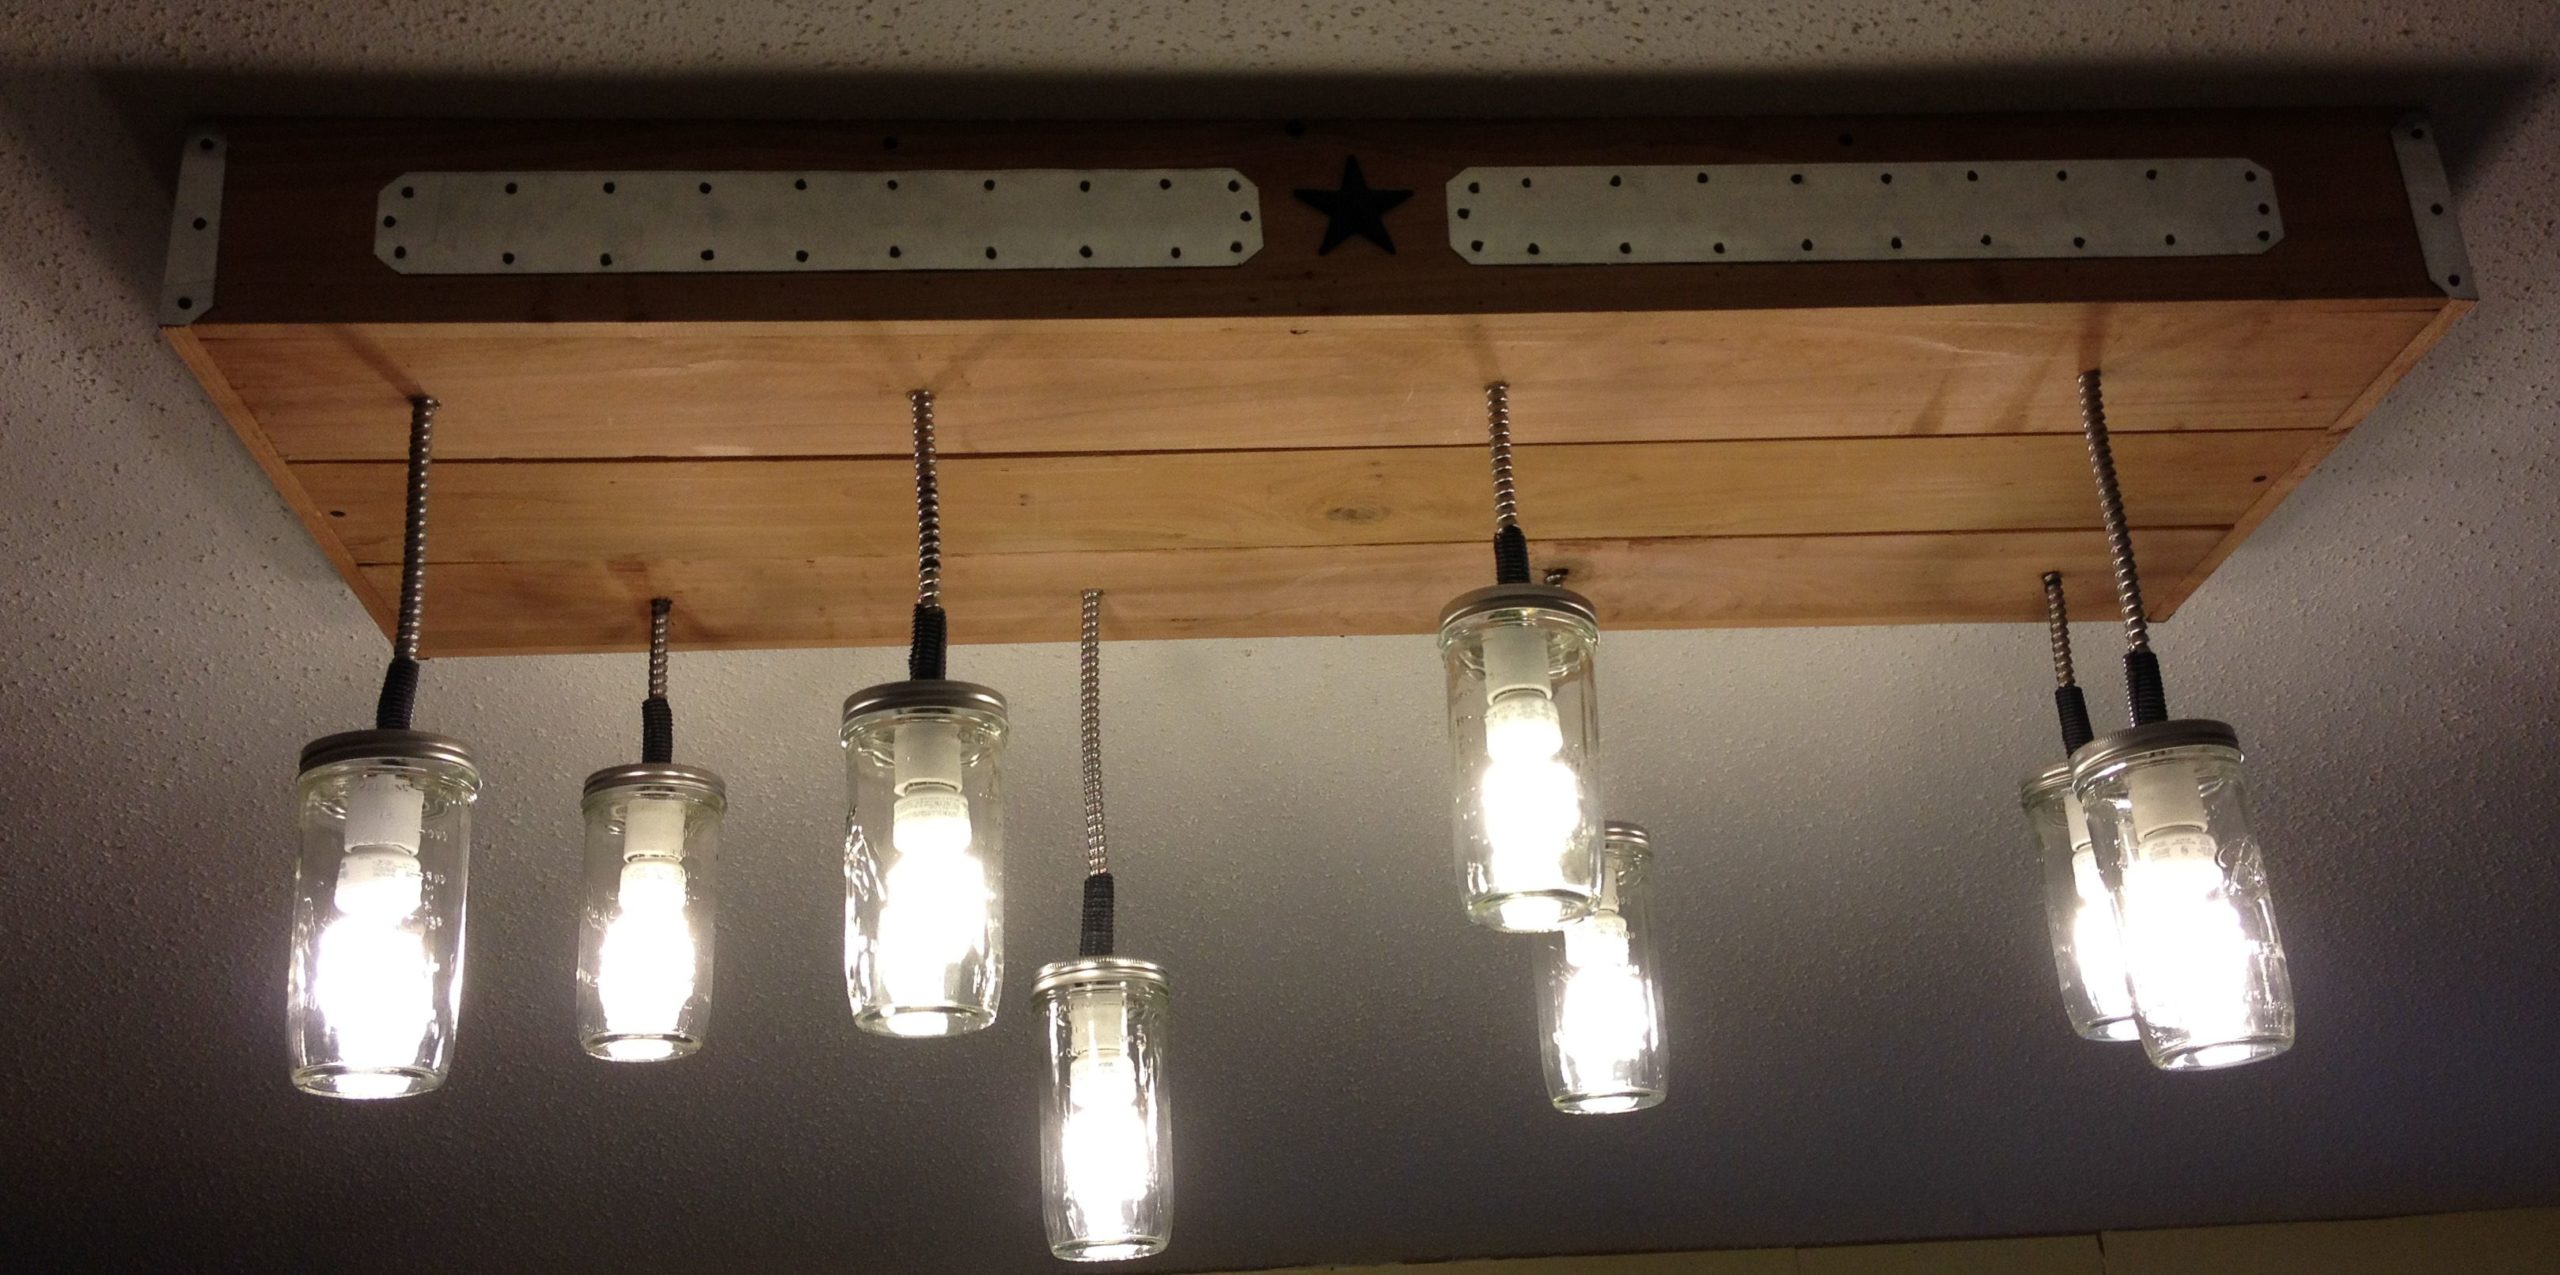 kitchen light fixture idea at home depot